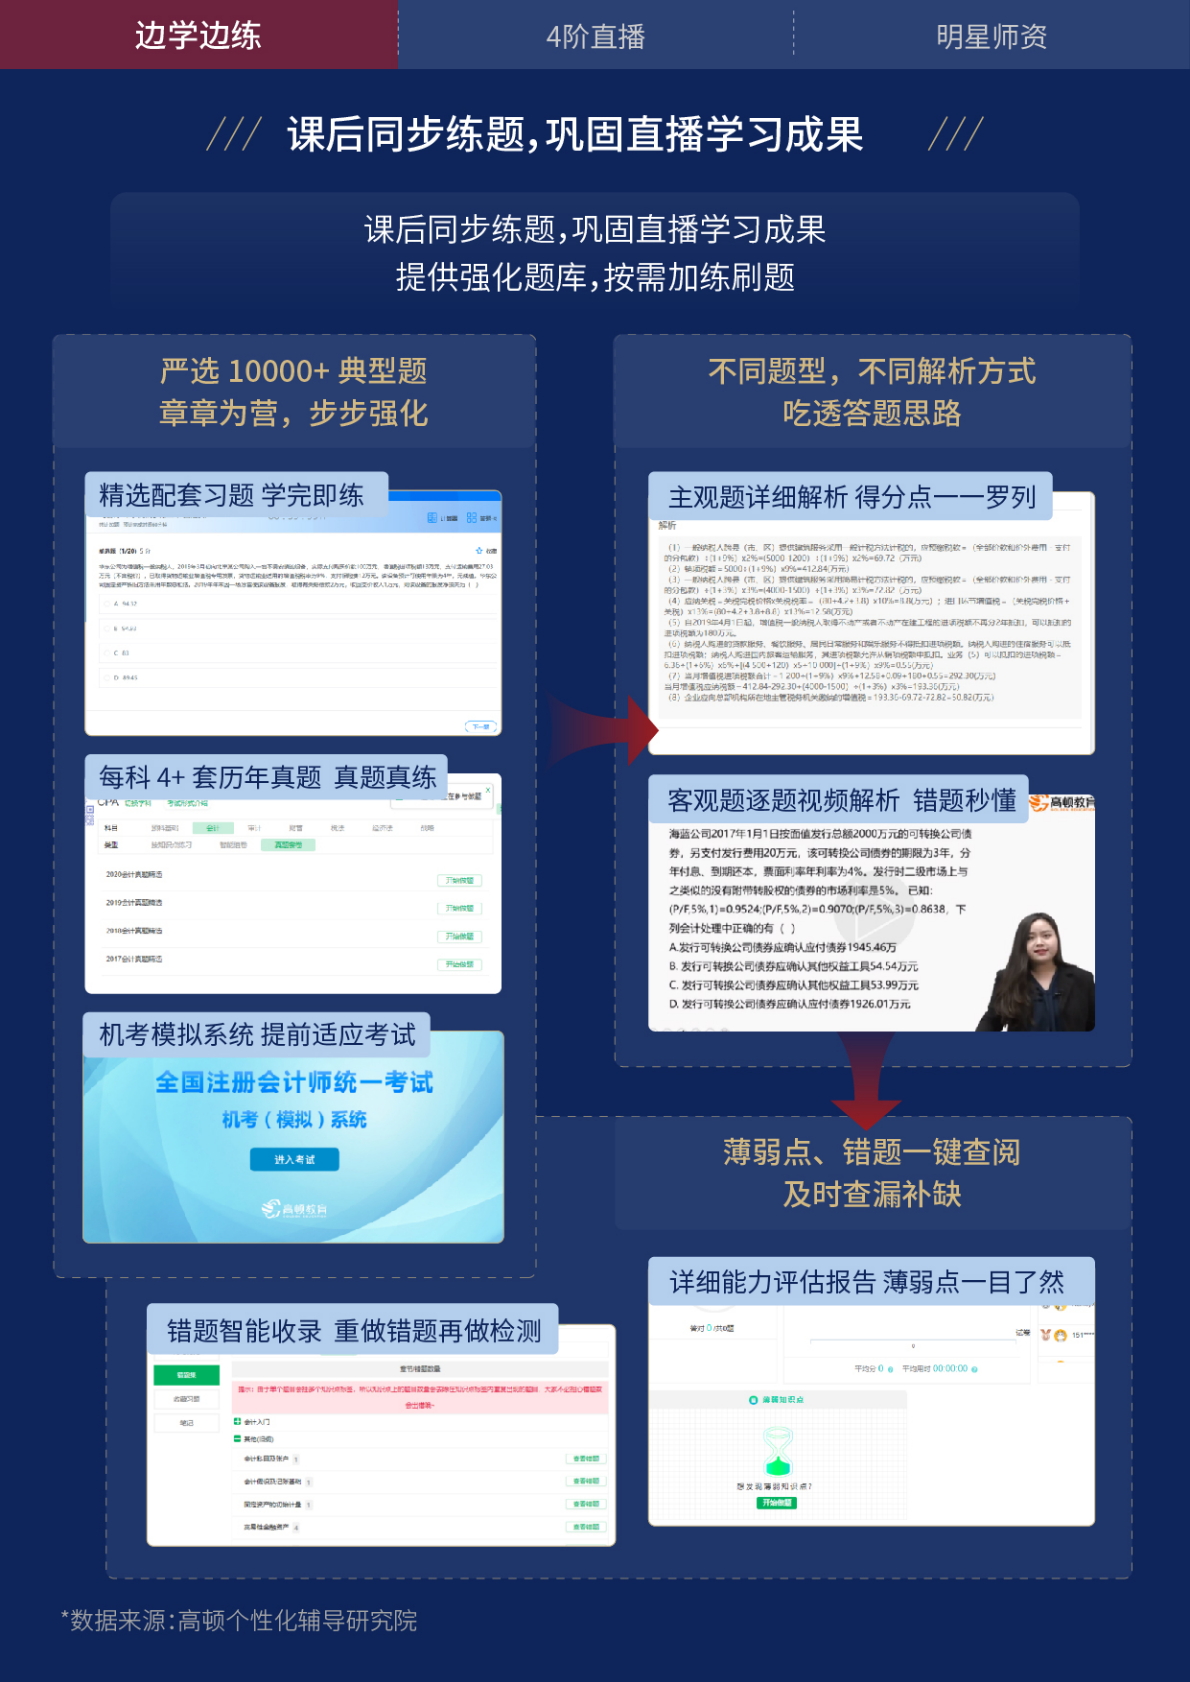 https://simg01.gaodunwangxiao.com/uploadfiles/product-center/202211/18/054b5_20221118151000.png